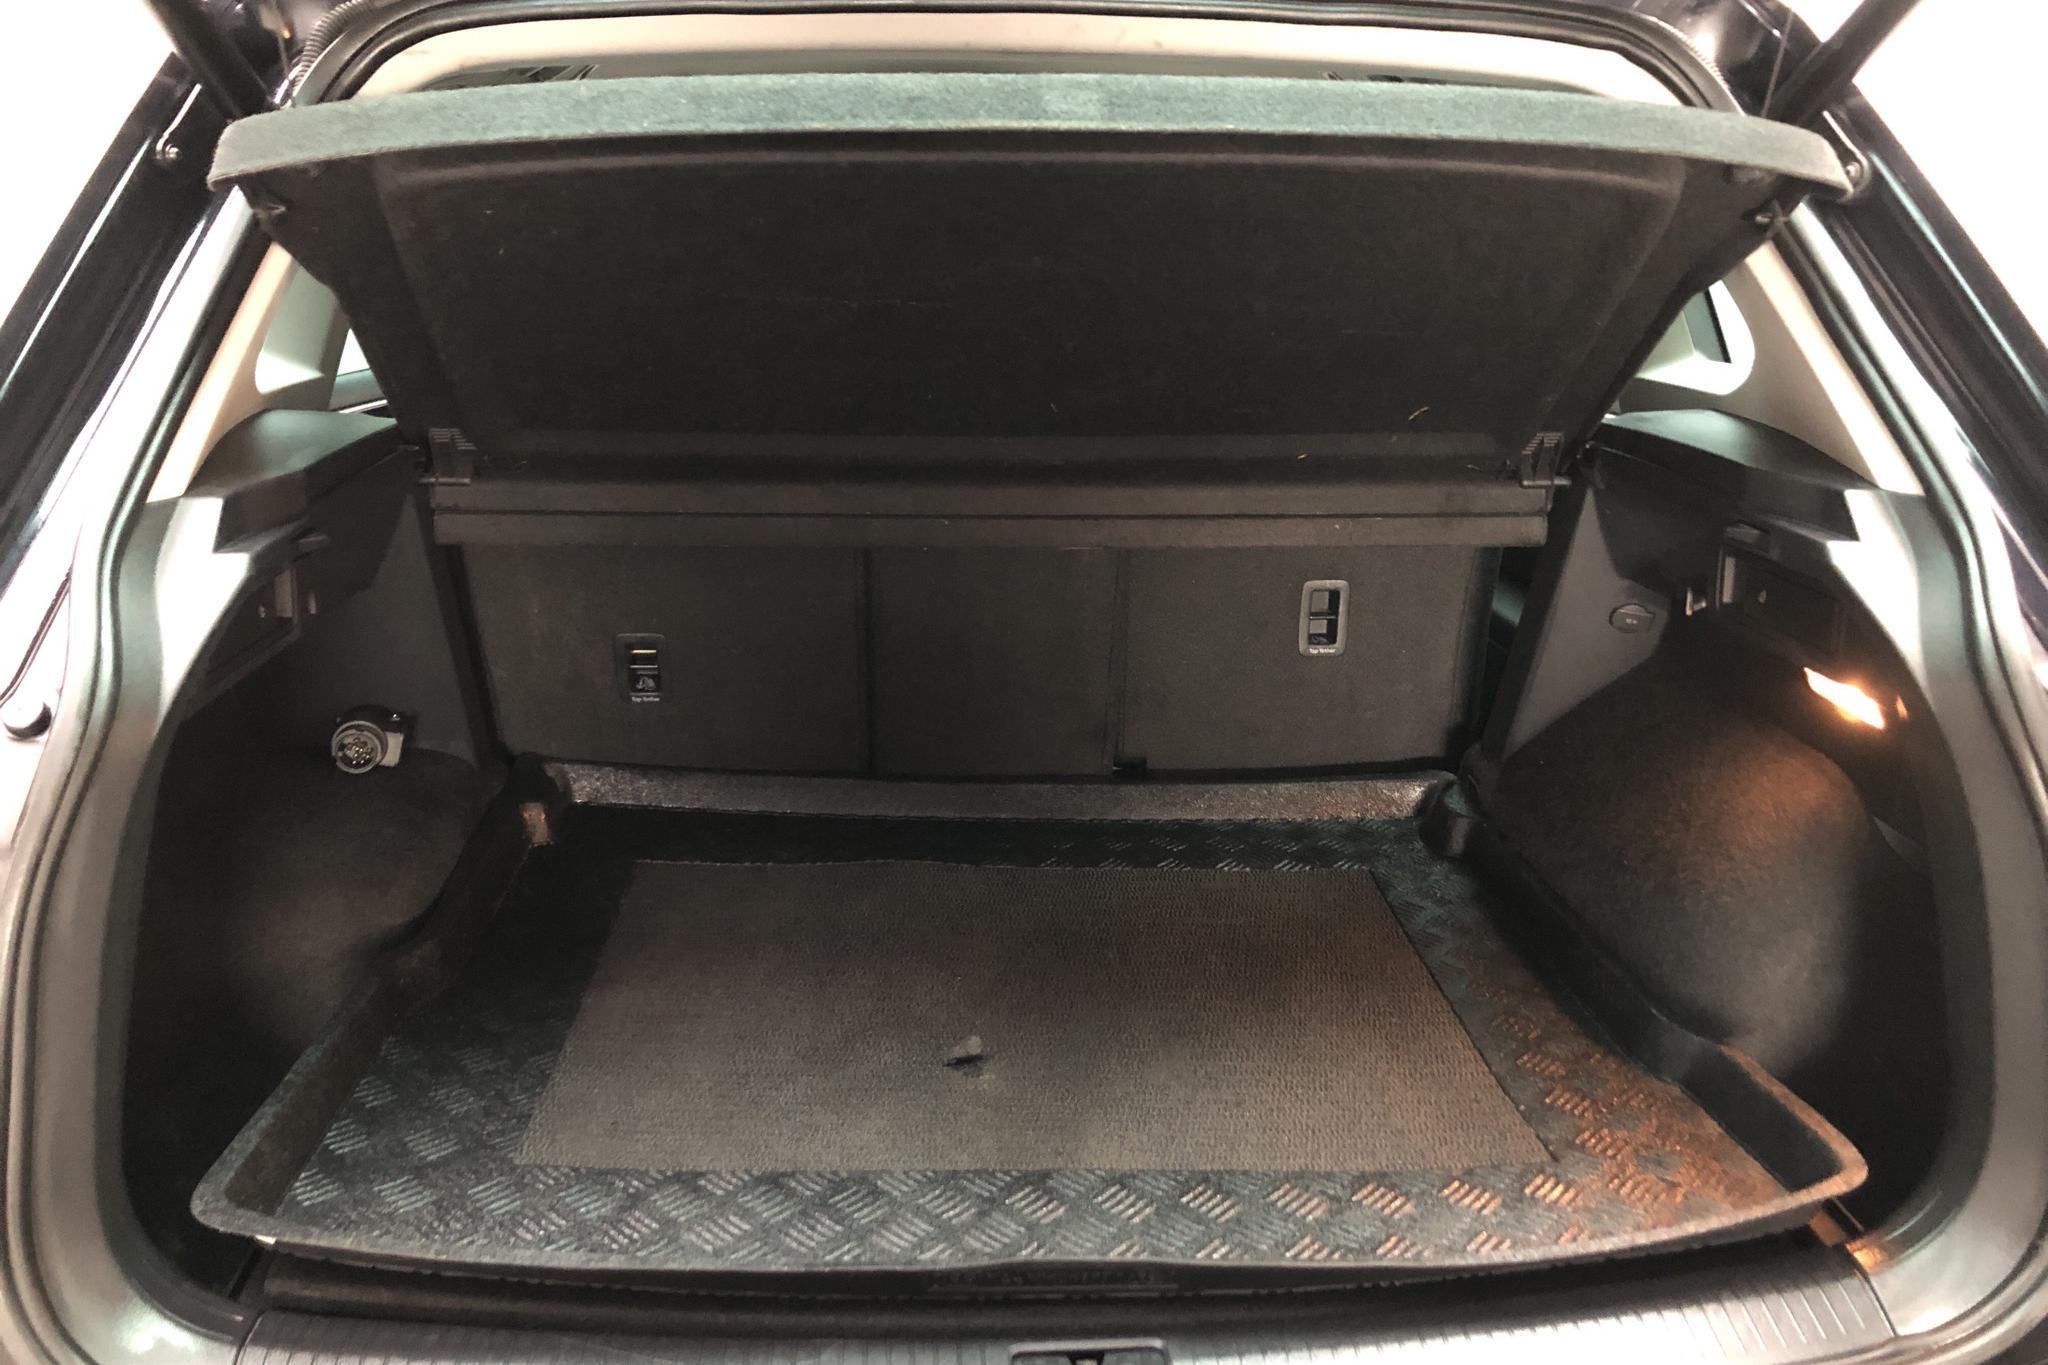 VW Tiguan 2.0 TDI 4MOTION (190hk) - 101 870 km - Automatic - black - 2017